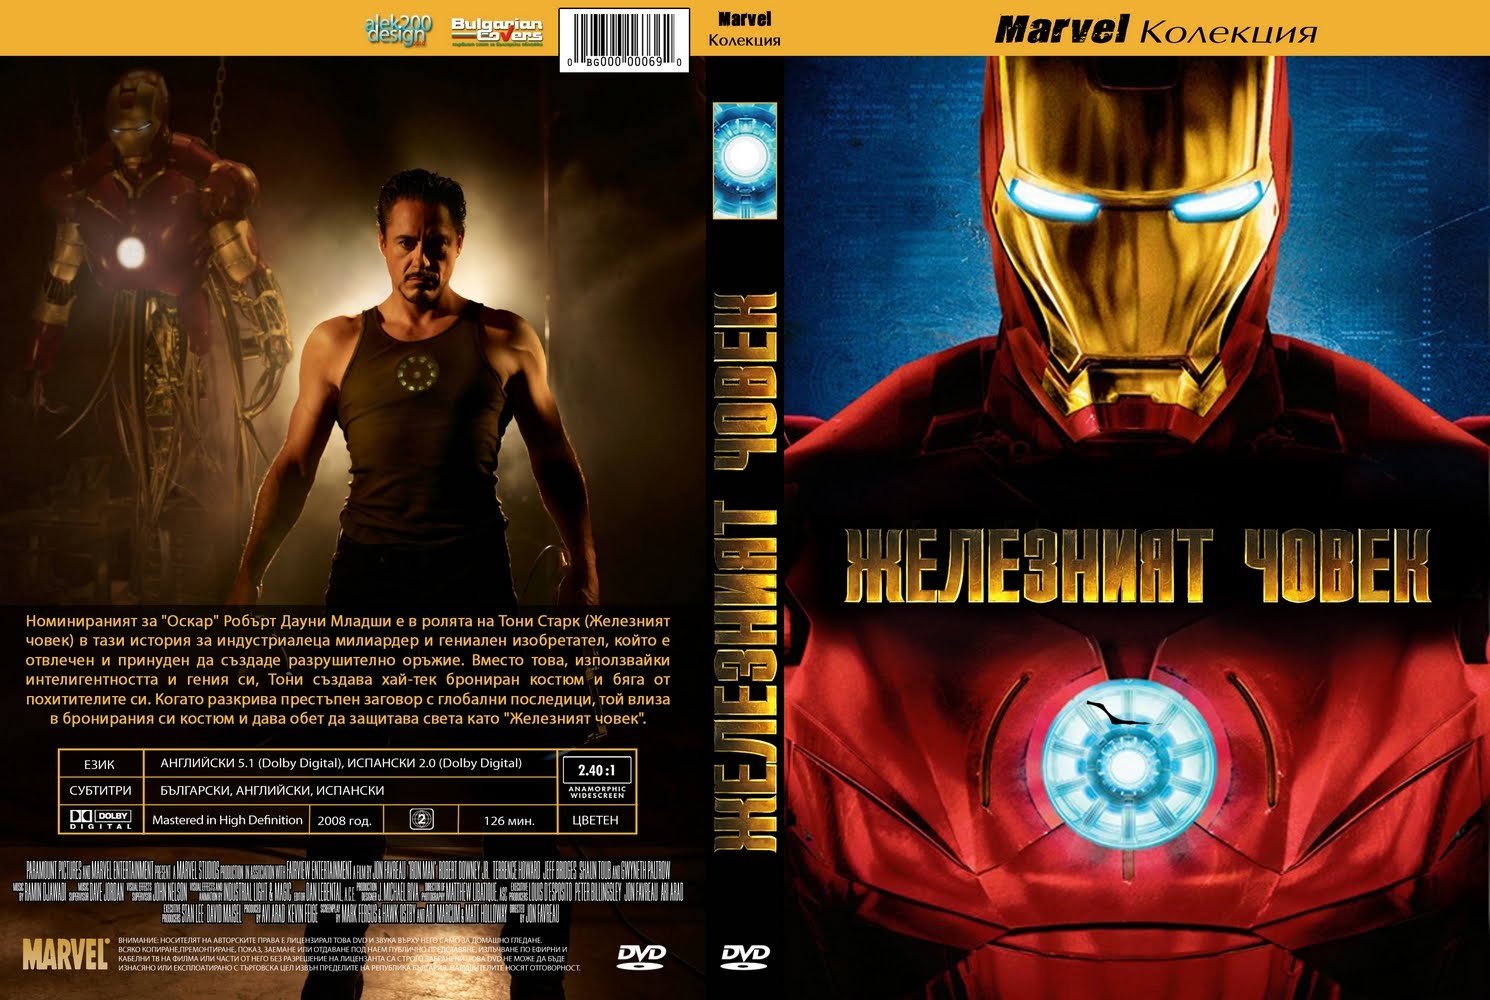 Фраза железного человека. Железный человек 2008 обложка. DVD Iron man 2008. Железный человек 2008 обложка игры. Железный человек (DVD).